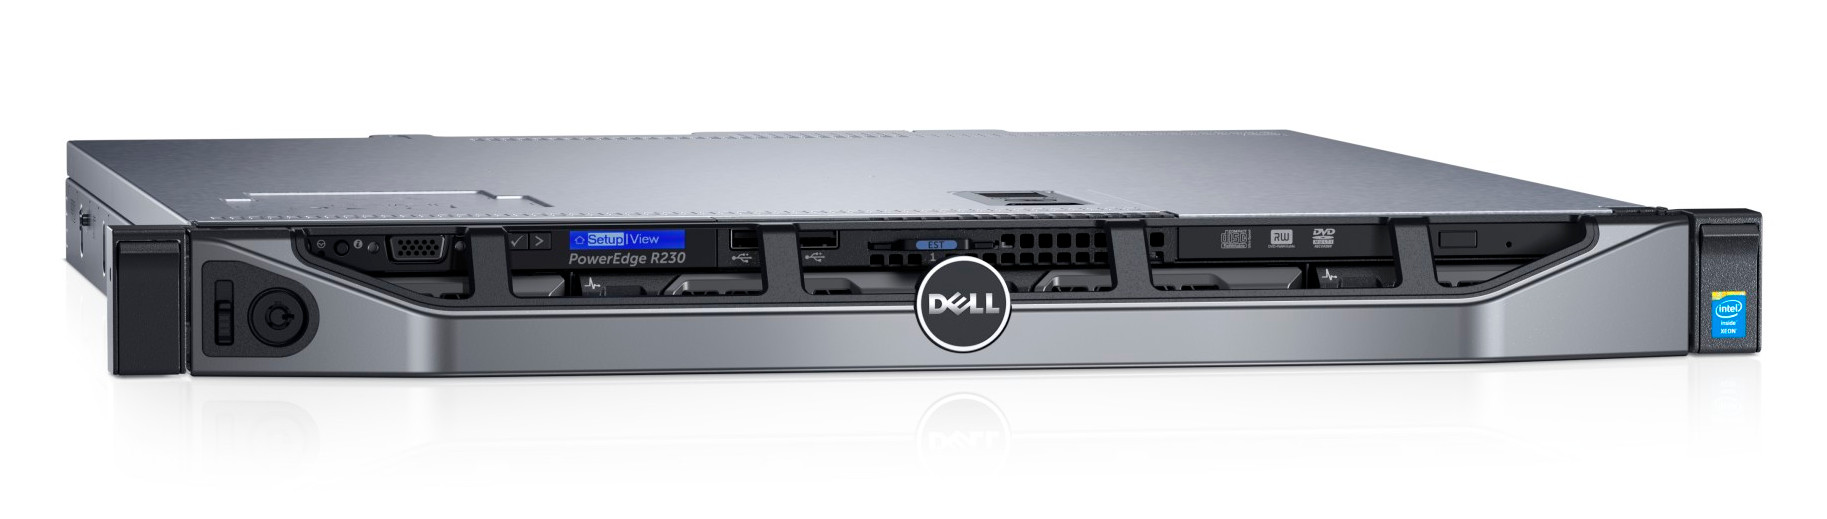 Сервер Dell PowerEdge R230 1xE3-1230v6 1x8Gb 1RUD x4 1x1Tb 7.2K 3.5" SATA RW H330 iD8Ex+PC 1G 2P 1x250W 3Y NBD Bezel EMC (210-AEXB-56)